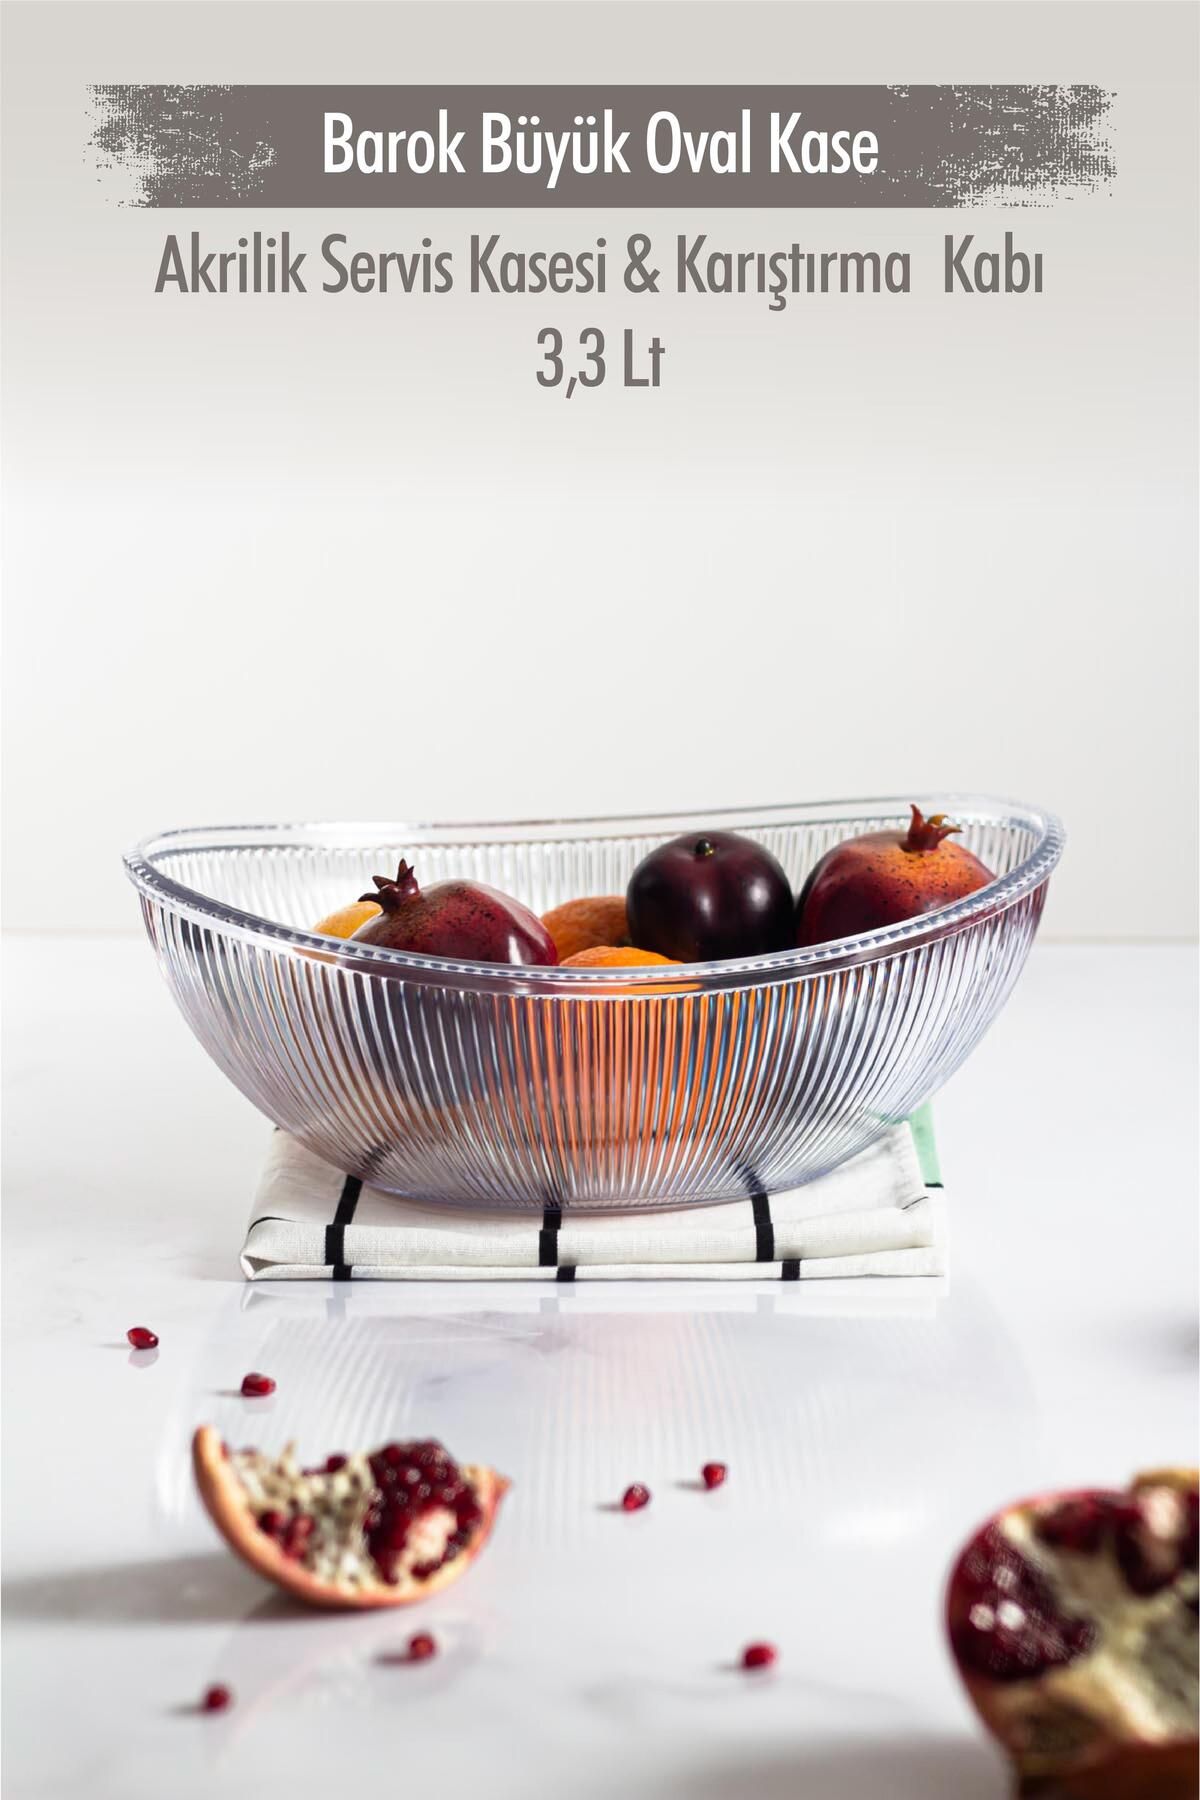 EWs Akrilik Barok Şeffaf Büyük Oval Meyve & Salata Kasesi & Karıştırma Kabı / 3,3 Lt  (CAM DEĞİLDİR)